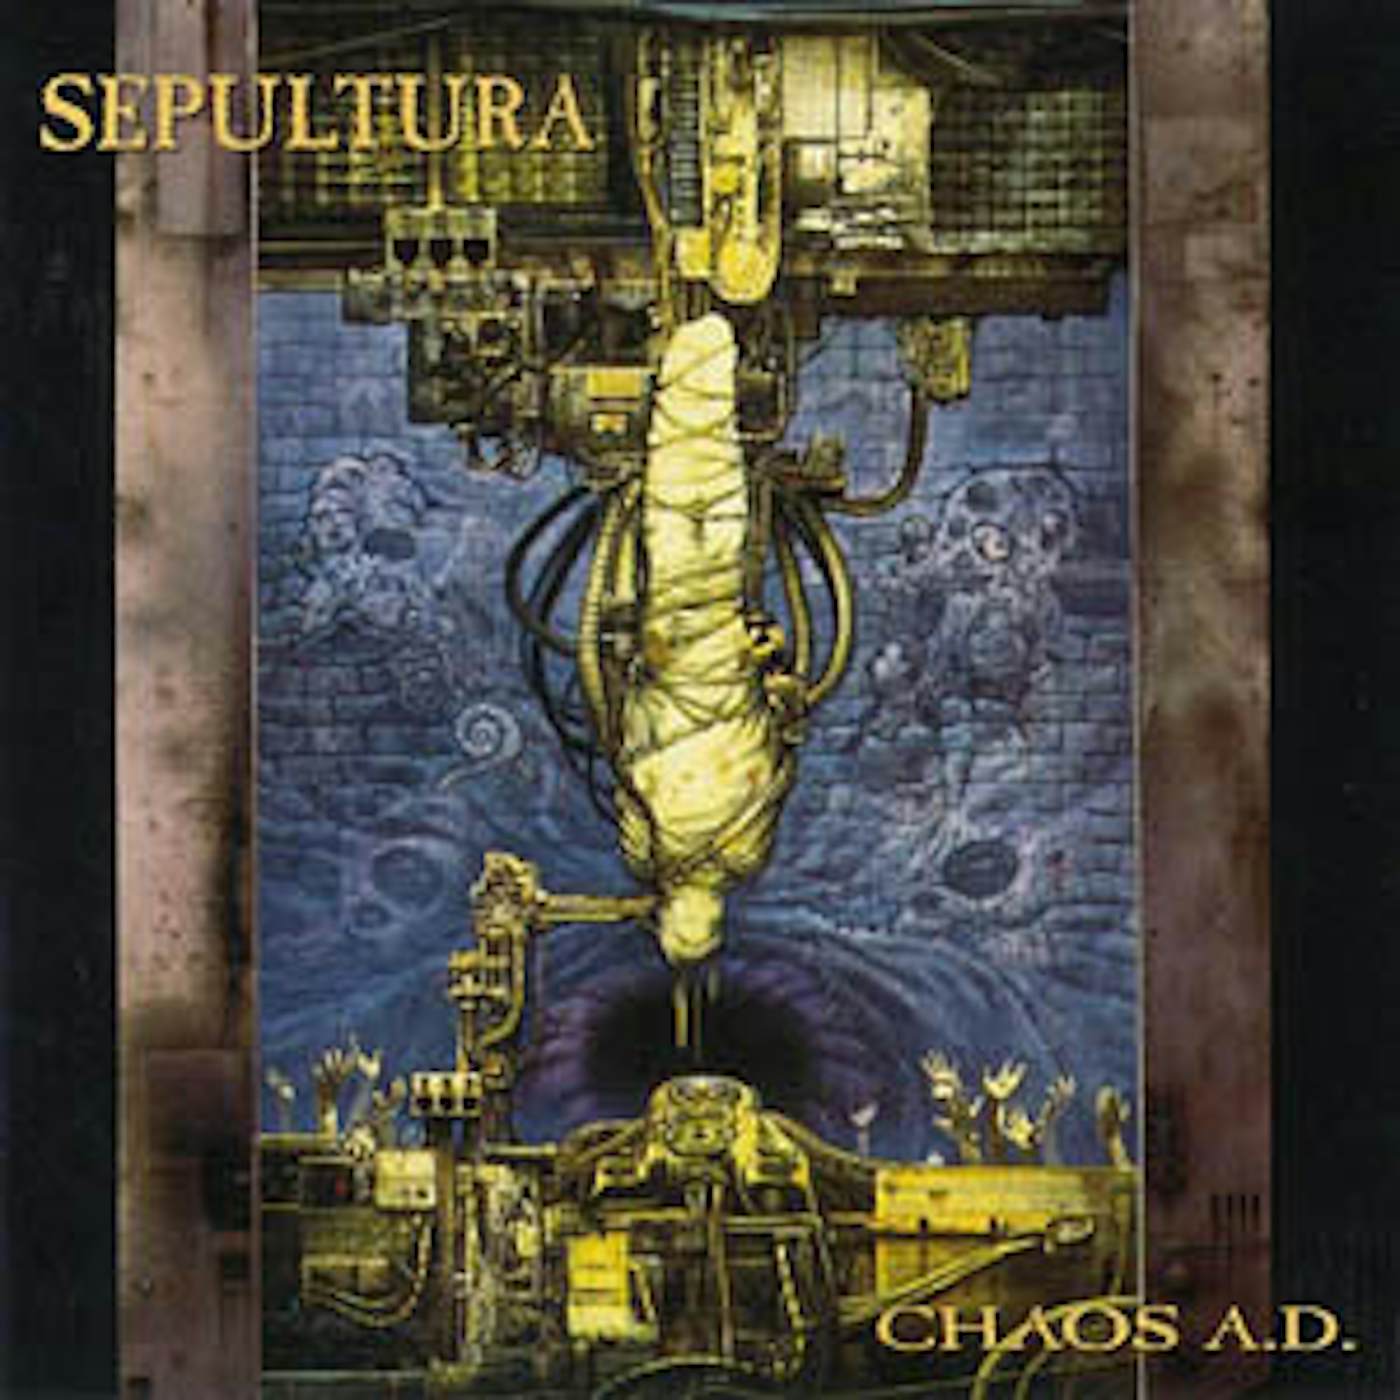 Sepultura LP Vinyl Record - Chaos A.D.